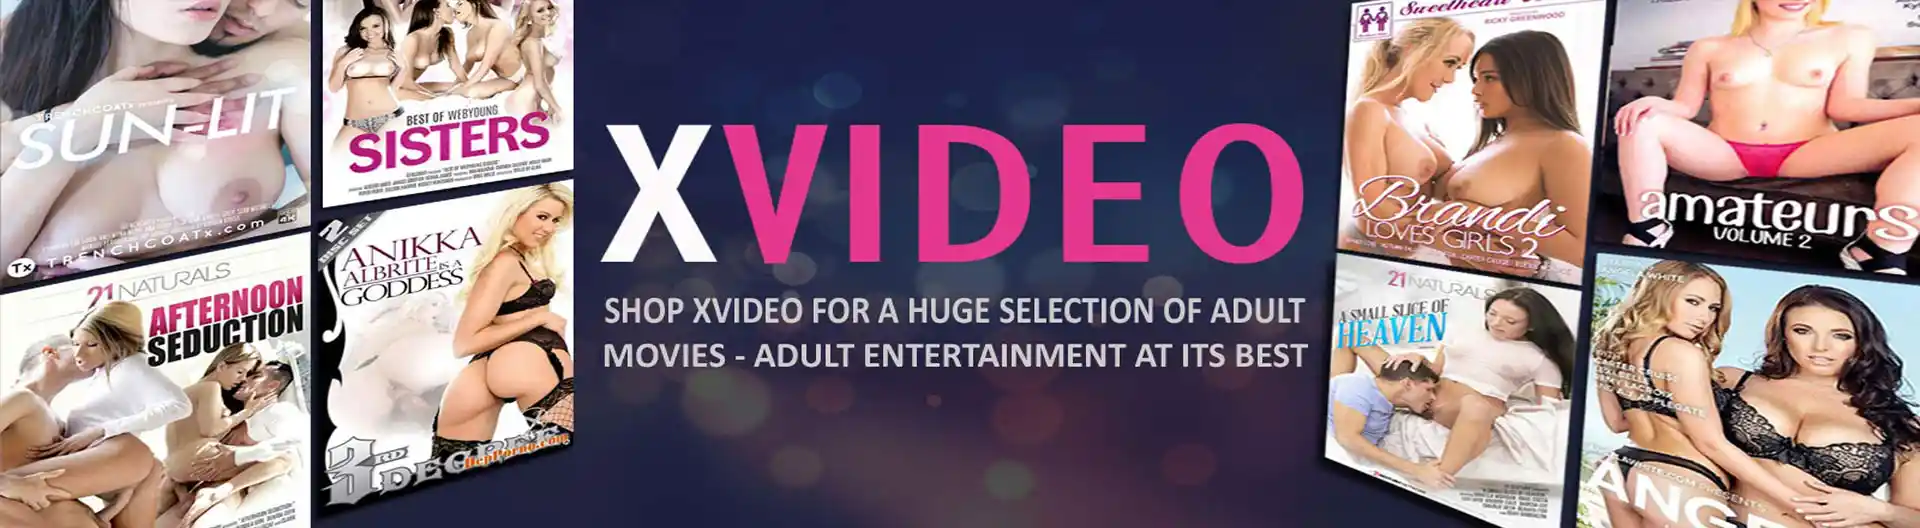 Wwwvidescom - Porn DVDs At Xvideo Australia